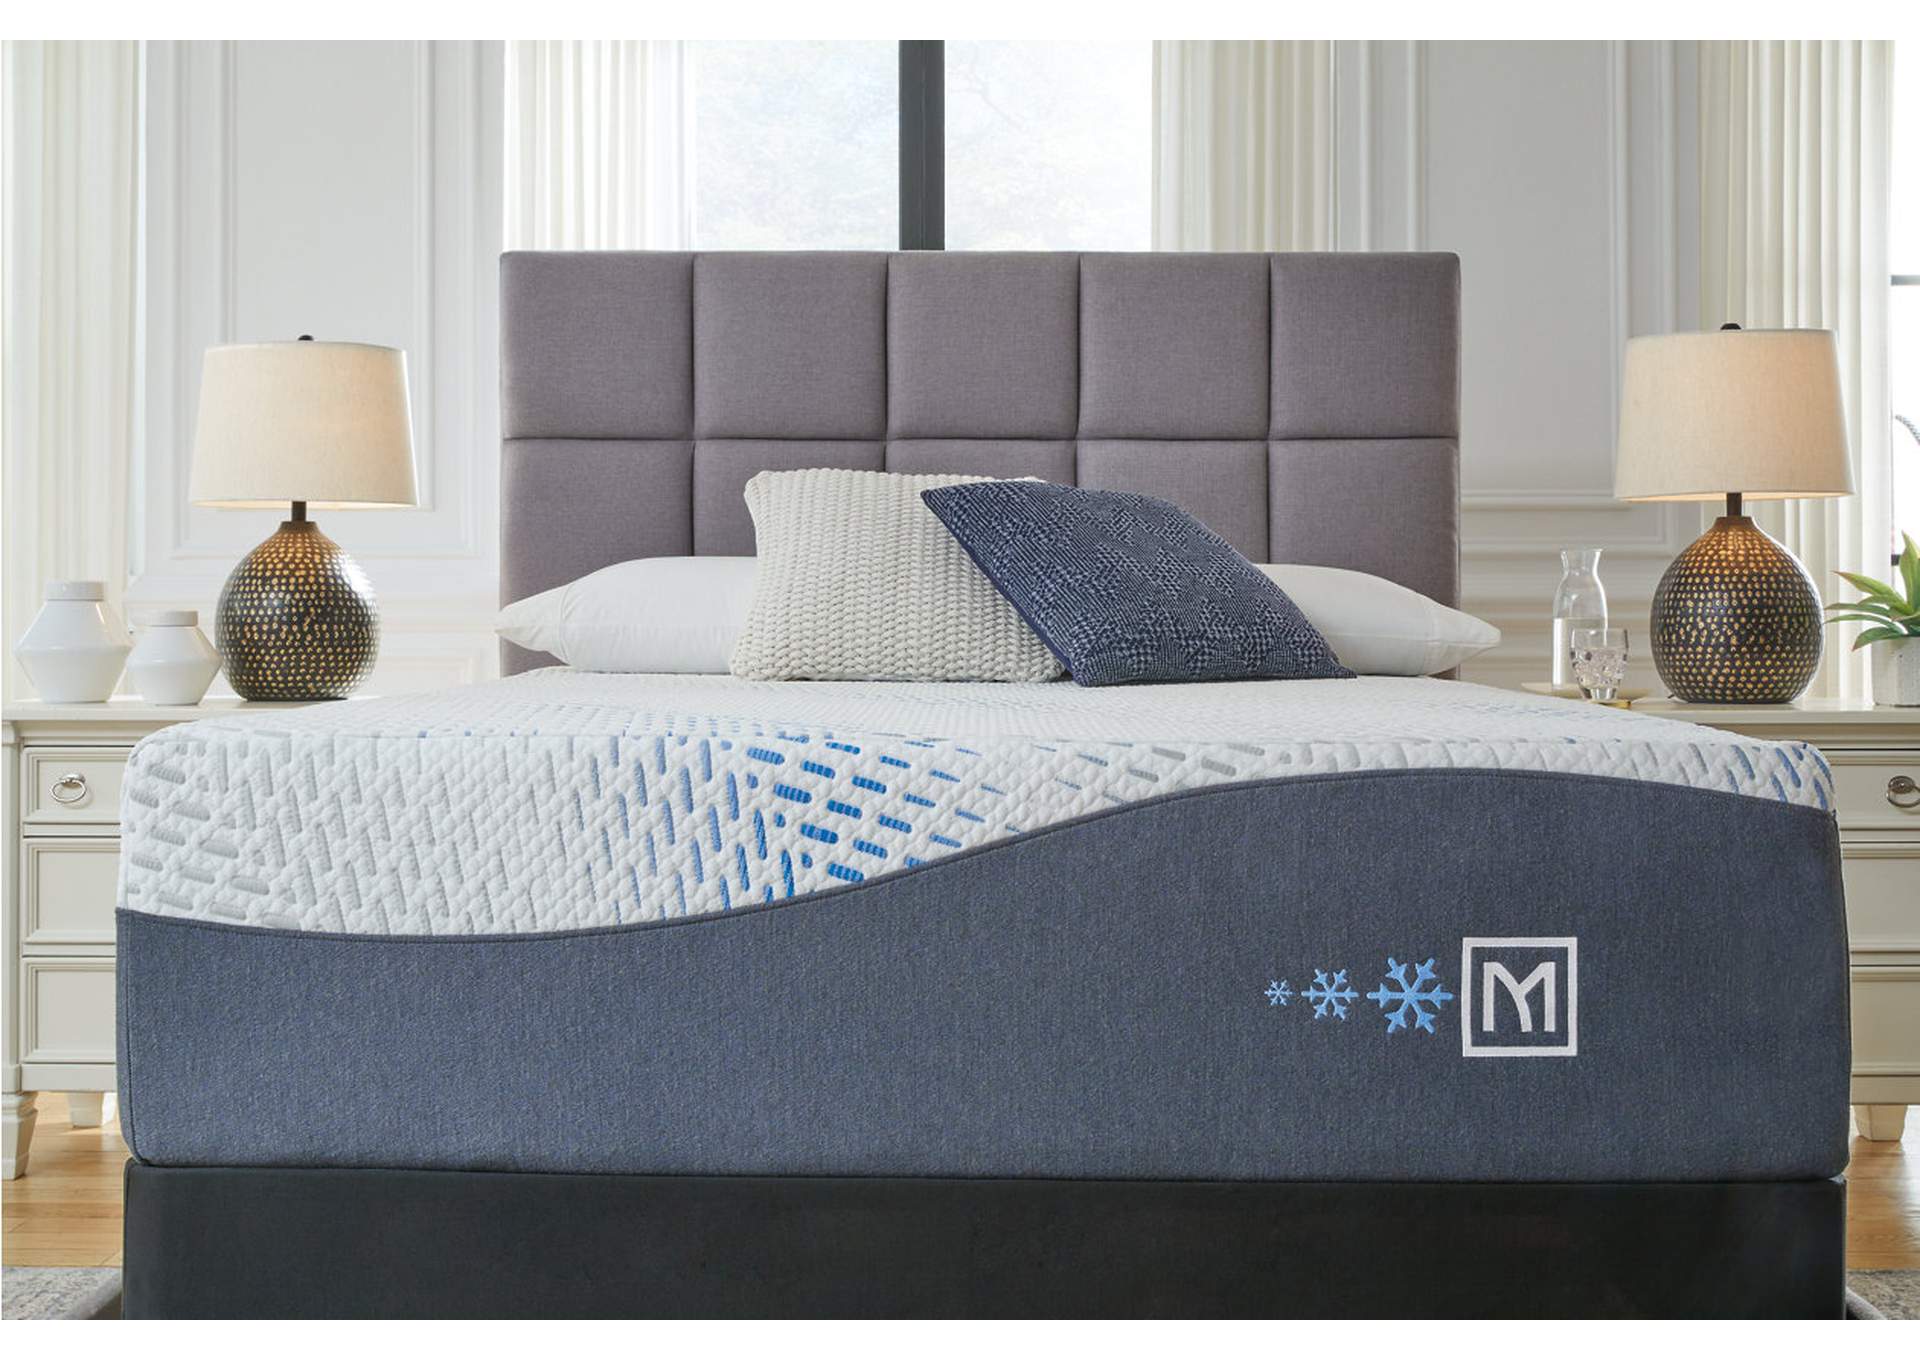 Millennium Cushion Firm Gel Memory Foam Hybrid Queen Mattress,Sierra Sleep by Ashley